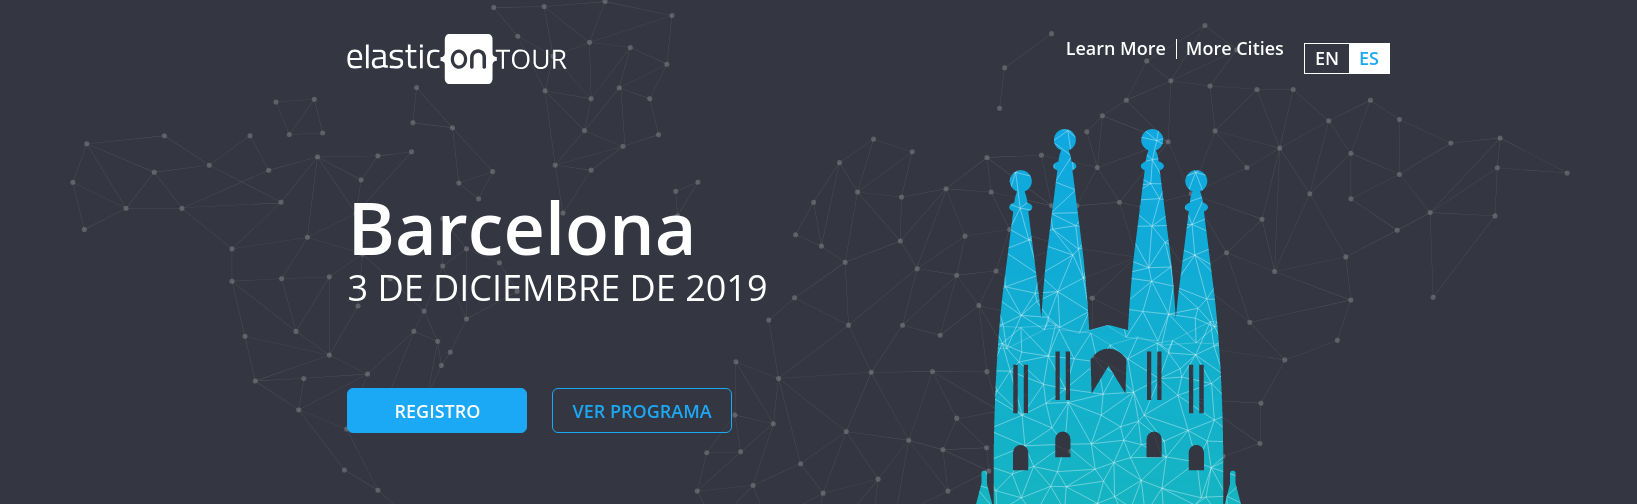 zylk en el ElasticON Tour de Barcelona 2019